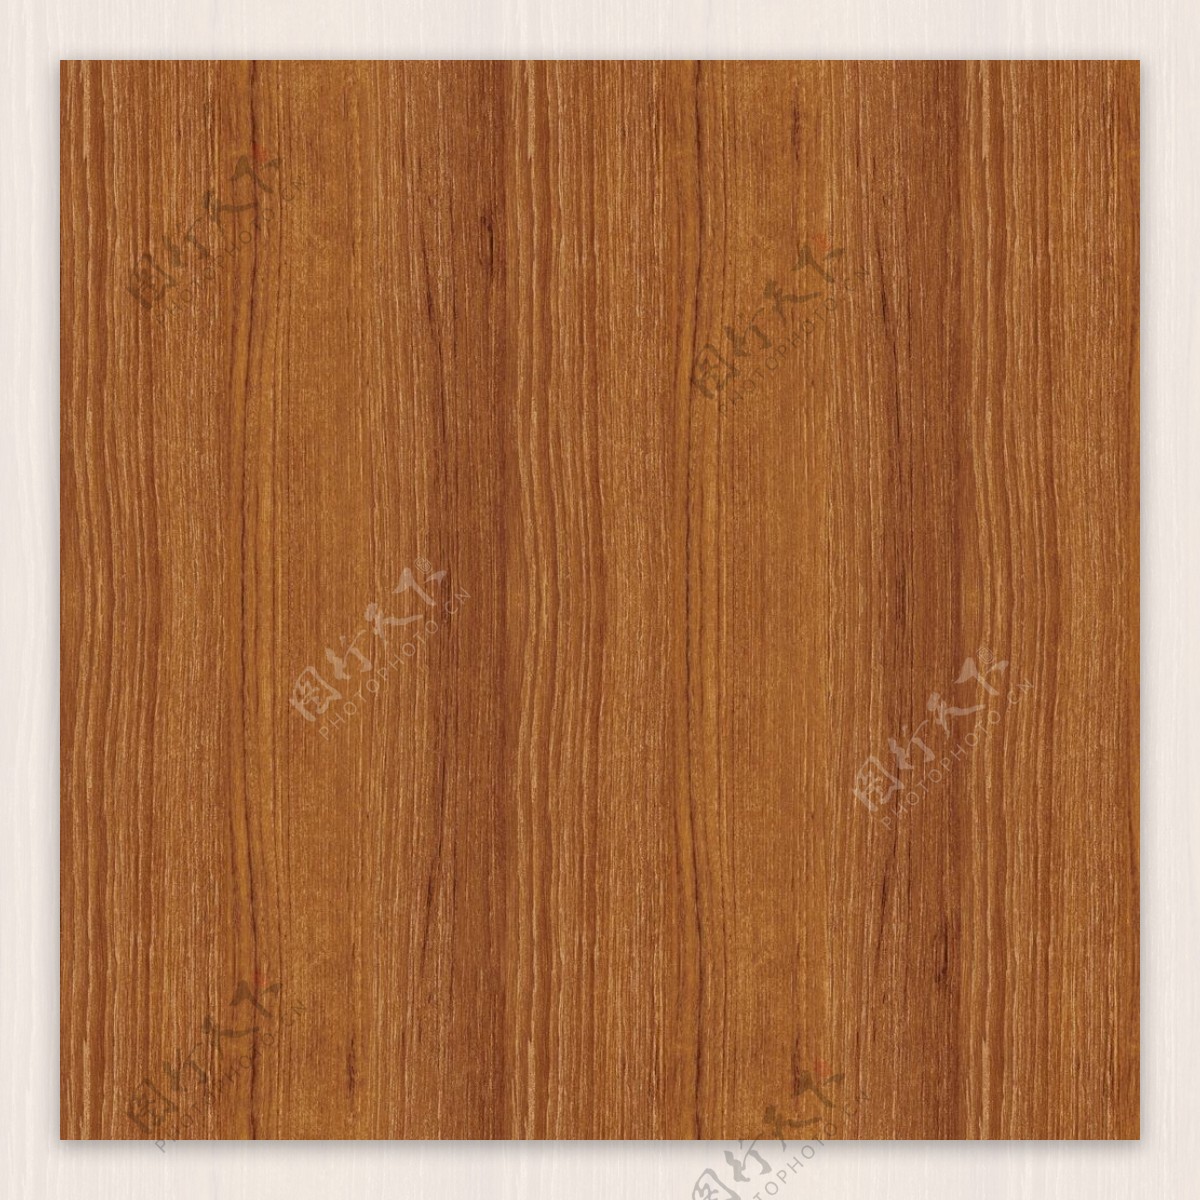 【贴图】棕橡木木纹-材质贴图下载_贴图素材_贴图网 - 建E网材质库